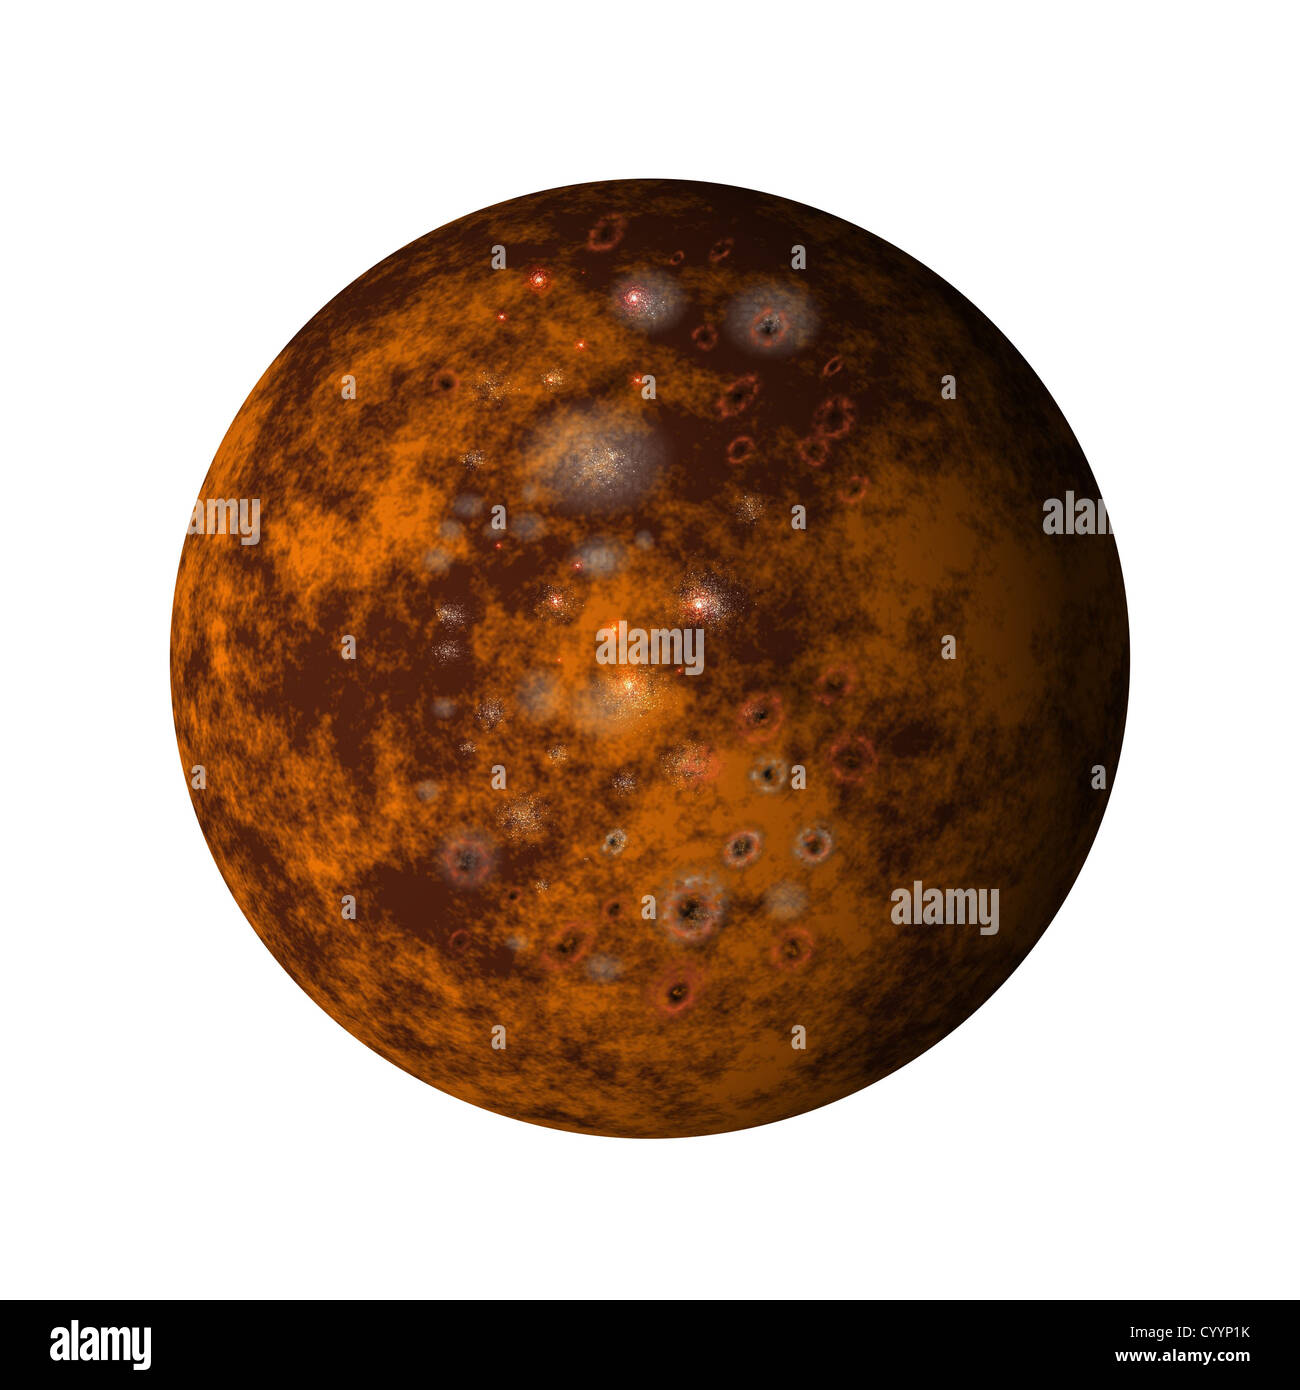 Abbildung des Jupiters Mond Callisto auf isolierte Hintergrund Stockfoto